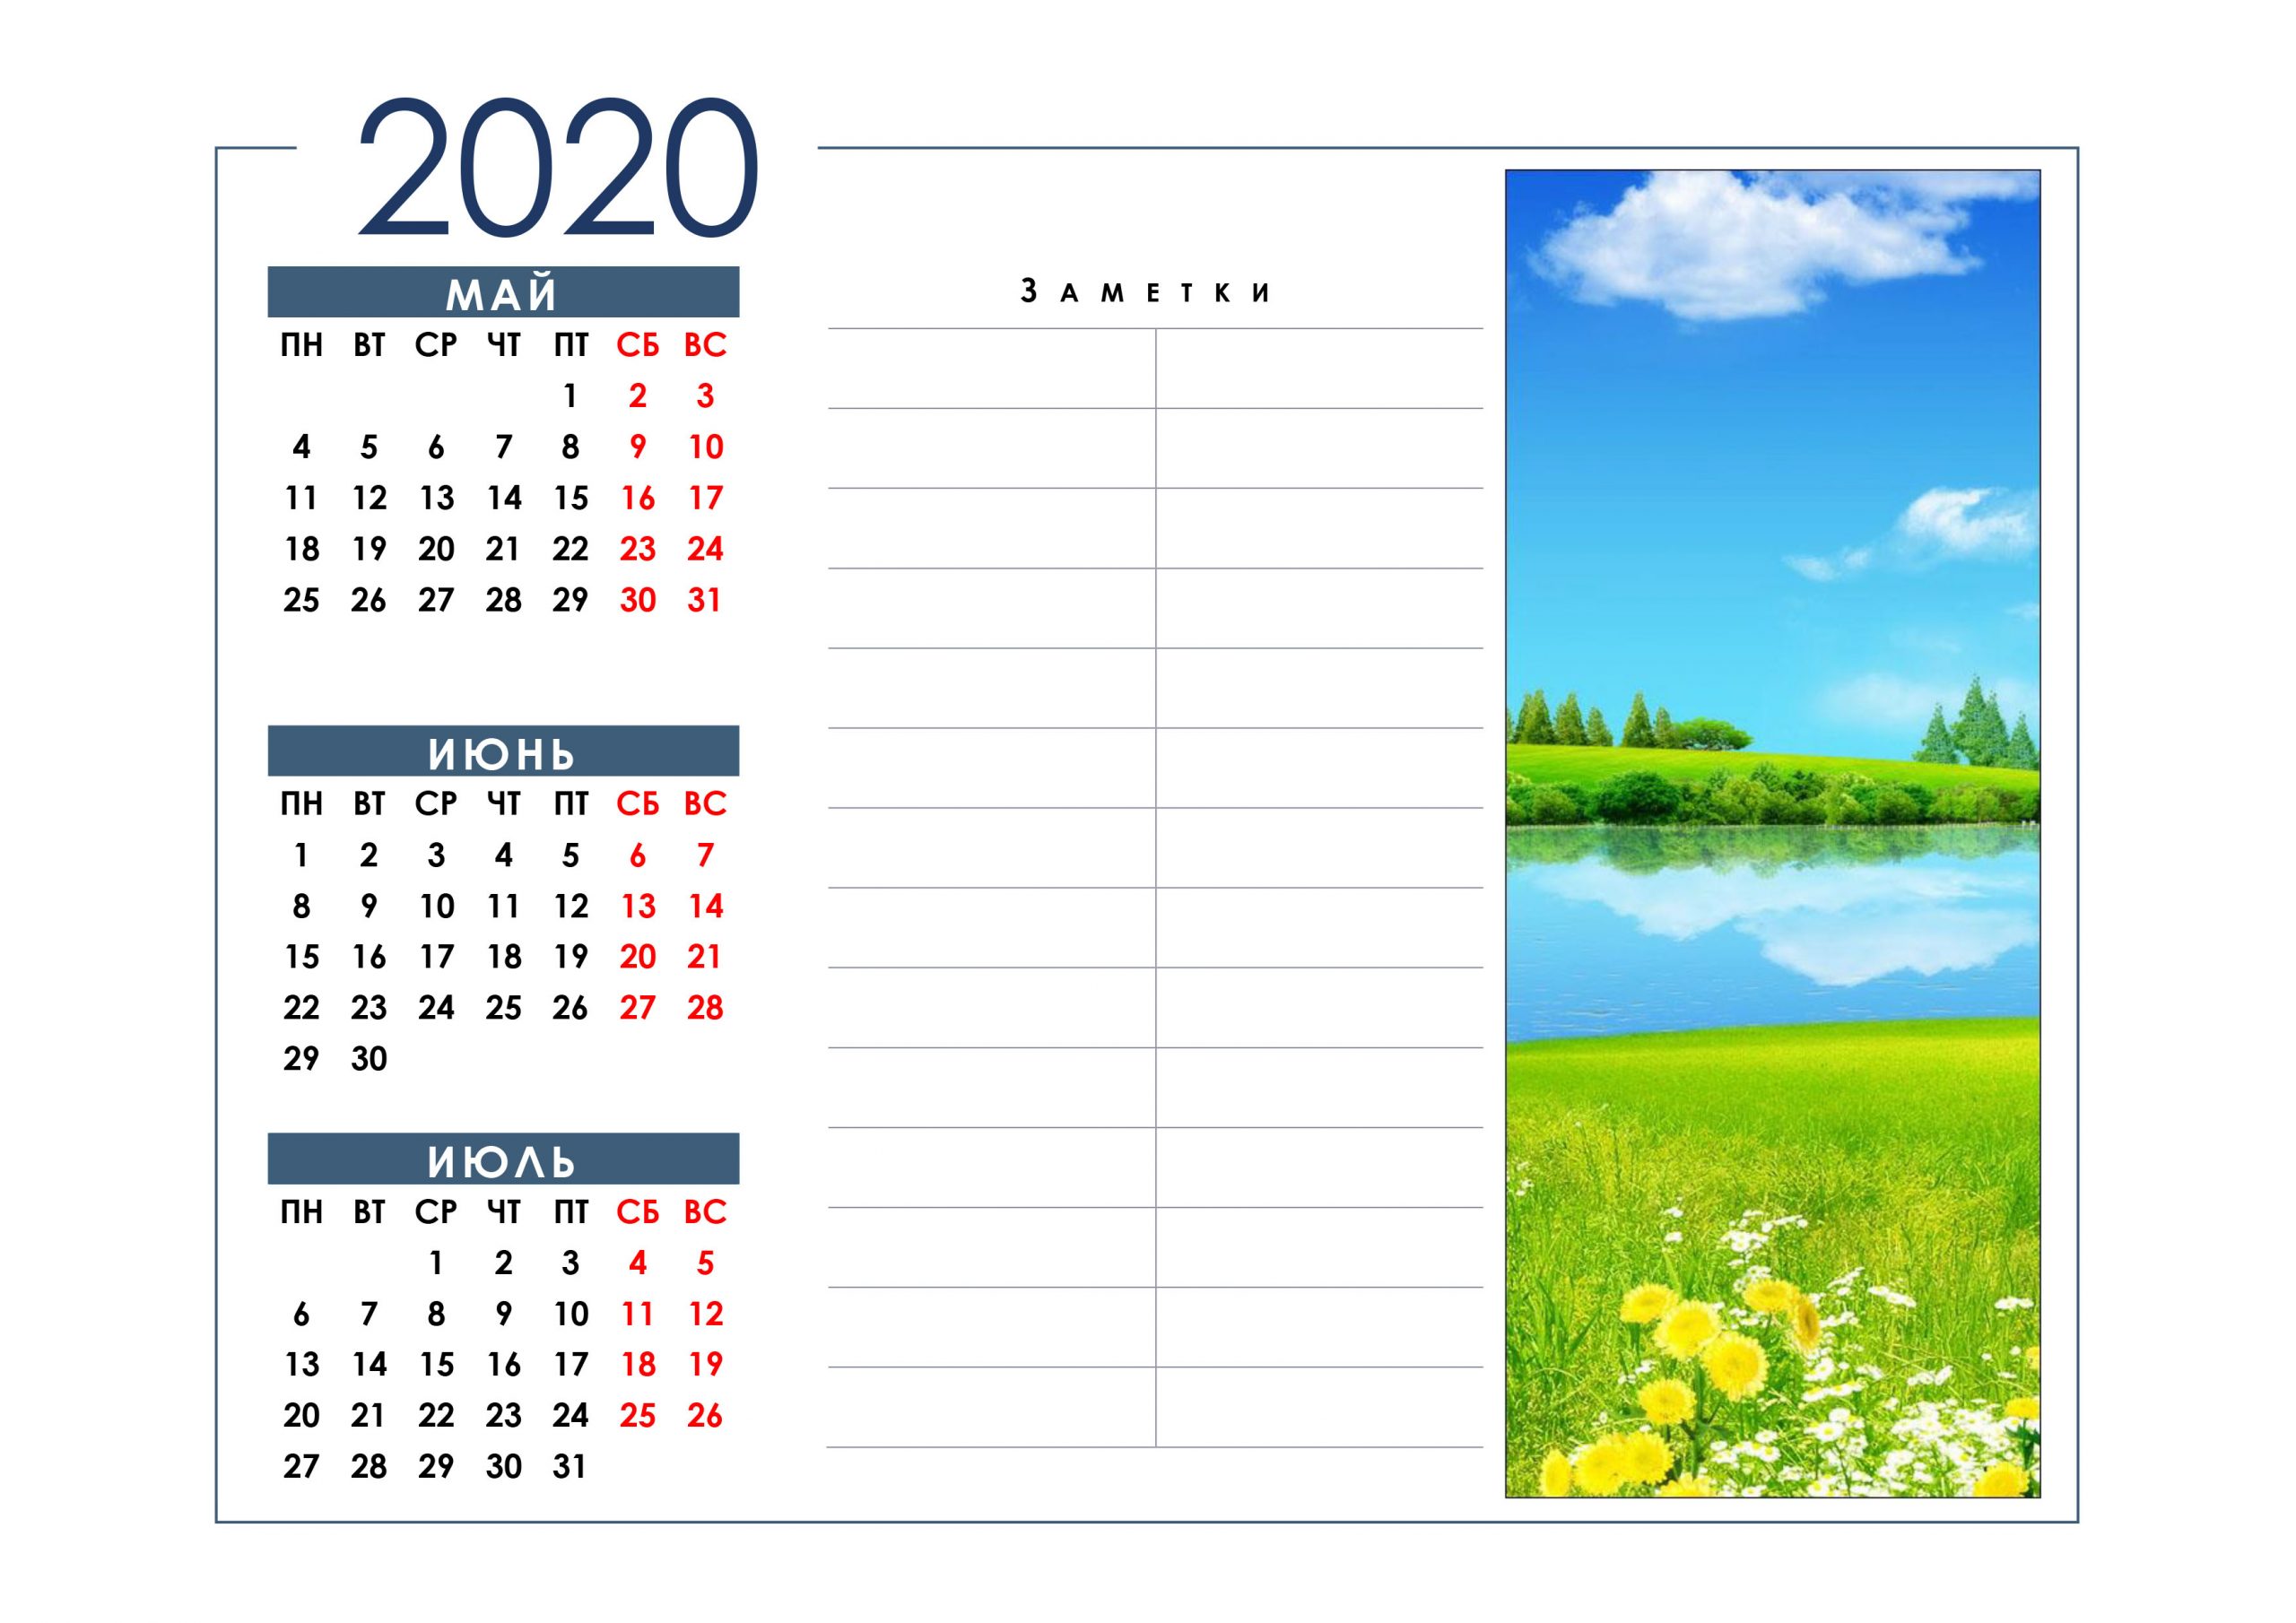 Календарь На Май, Июнь, Июль 2020: Скачать И Распечатать